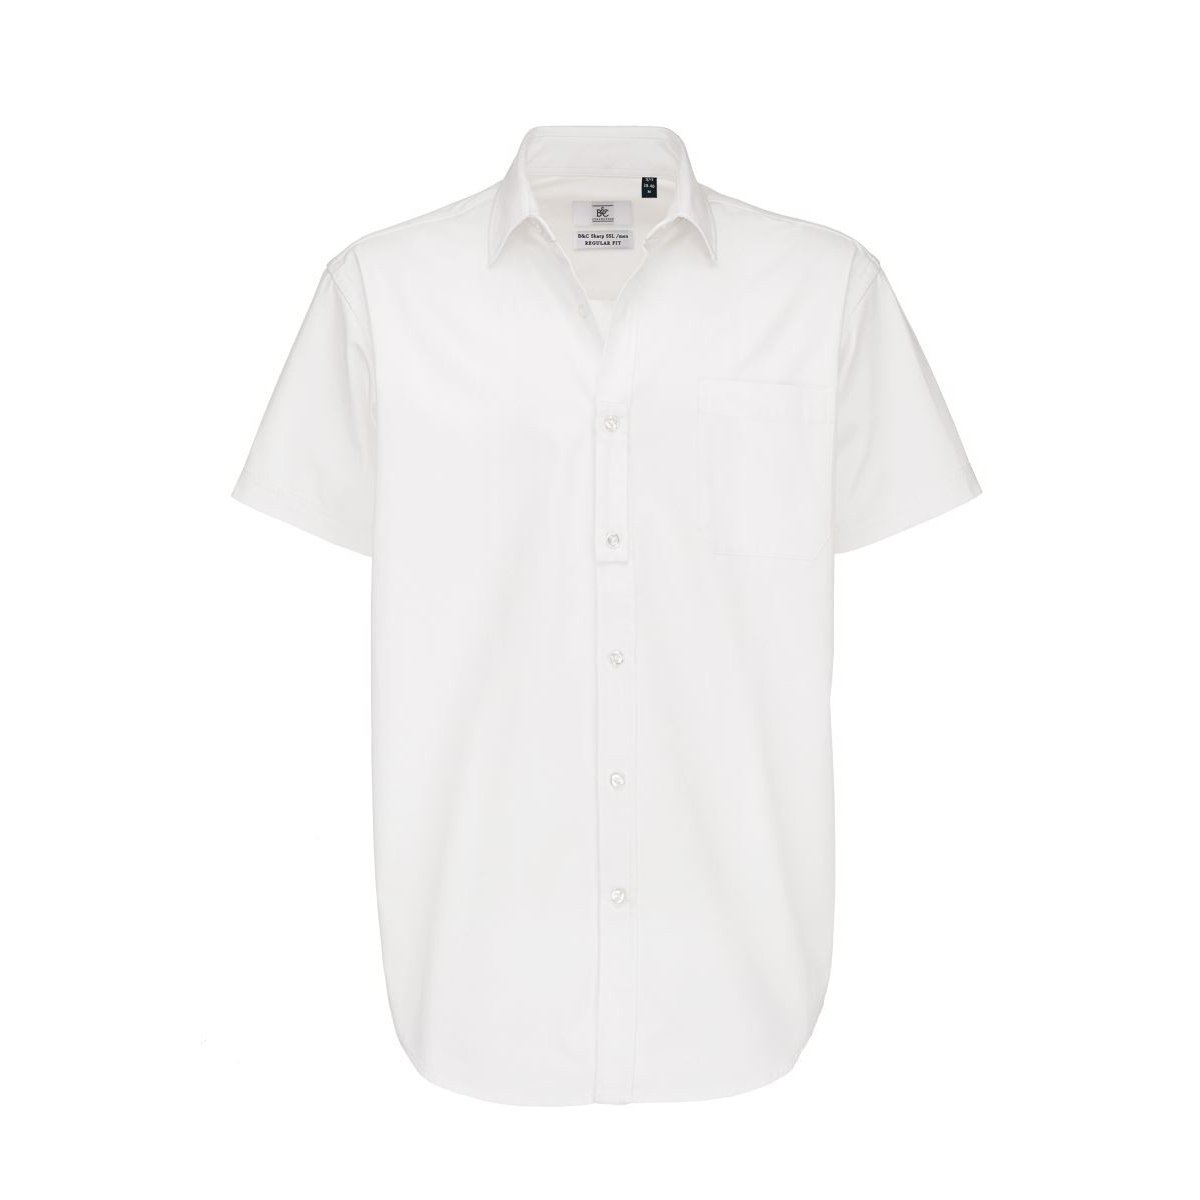 Pánská keprová košile B&C Sharp s krátkým rukávem - bílá, 4XL